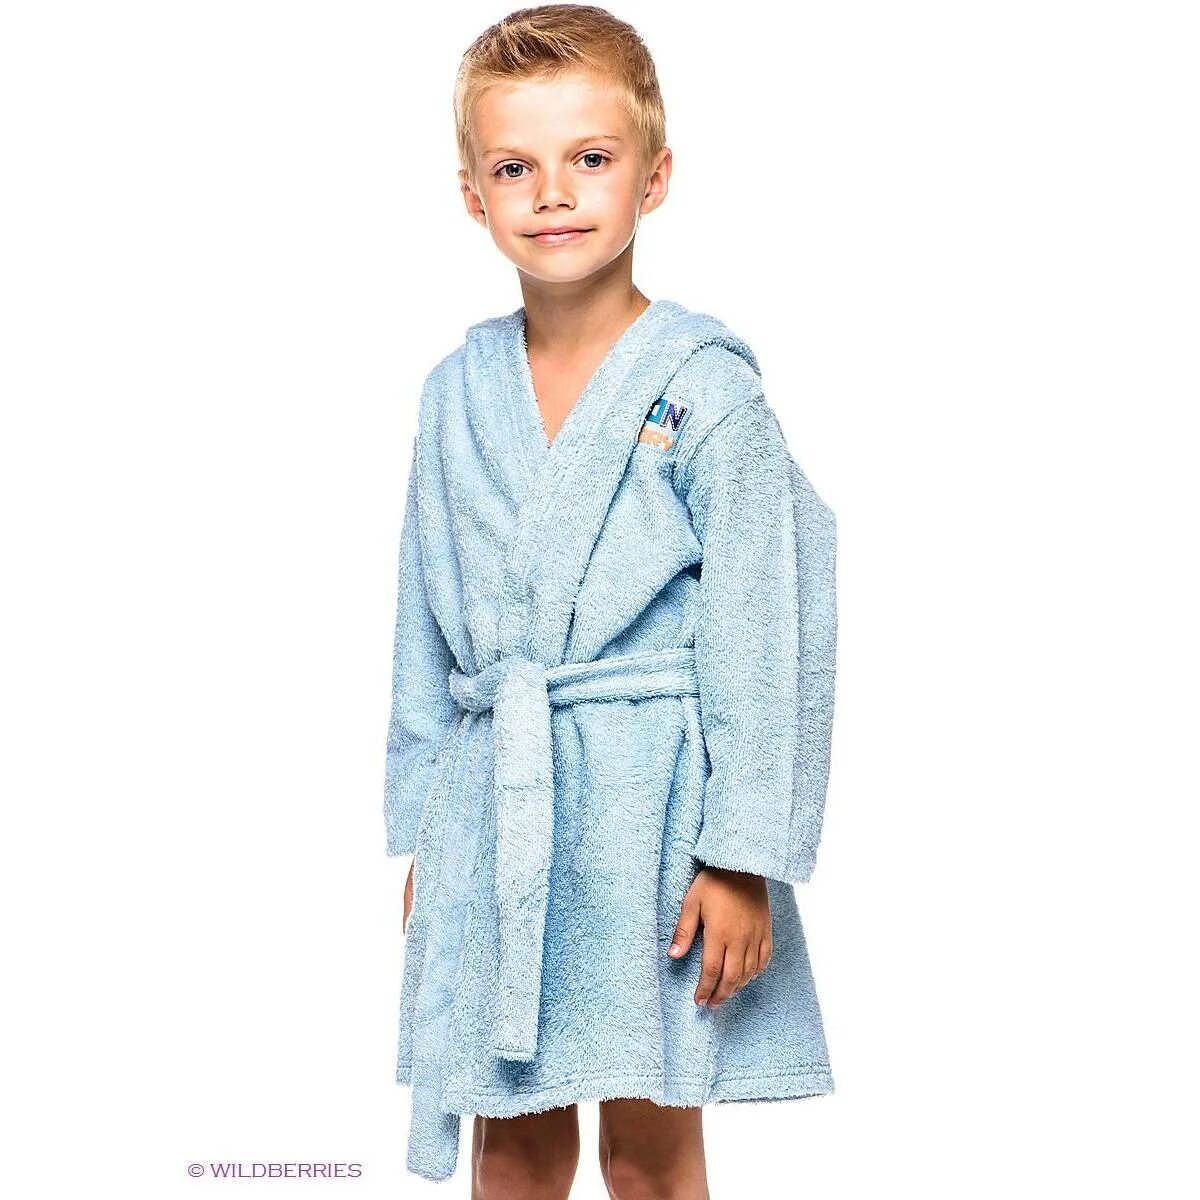 Купить халат для мальчика. Халат PLAYTODAY 12111011. Play today халат. Фиолетово-голубой халат детский. Халат плей Тудей Дино.